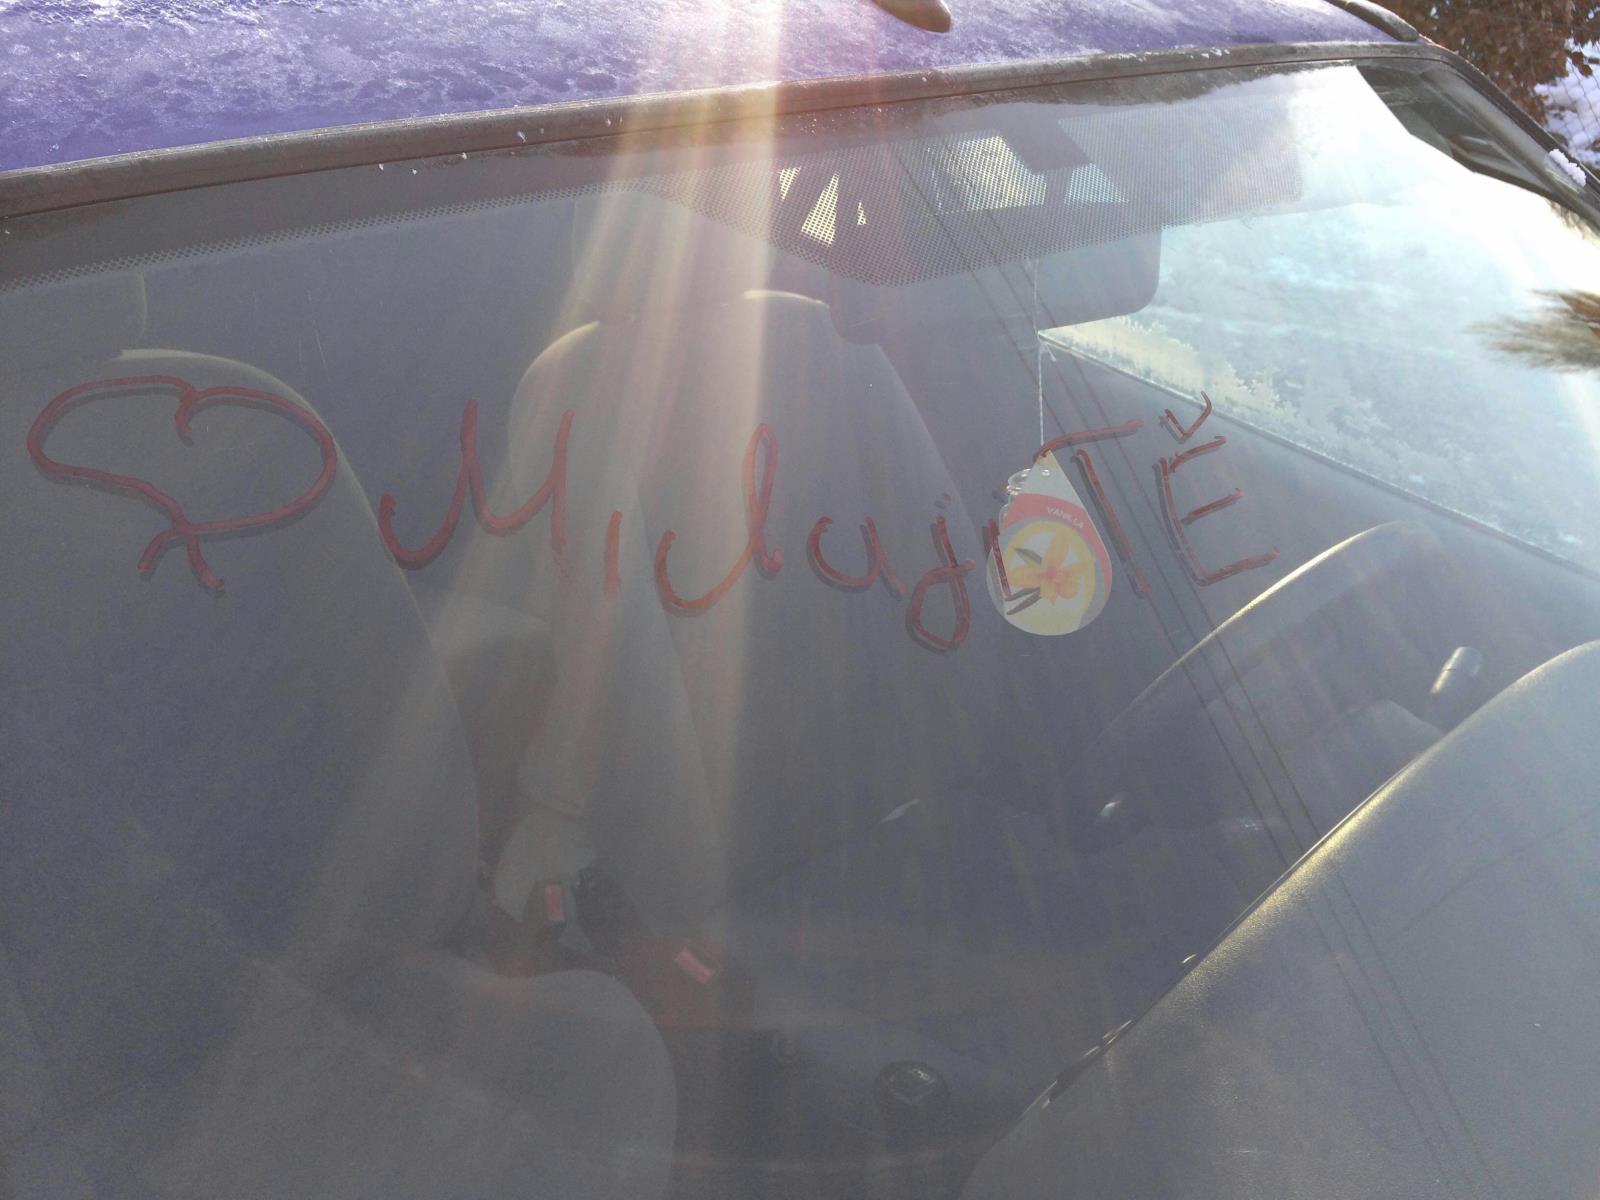 milostný vzkaz na autě oběti stalkingu